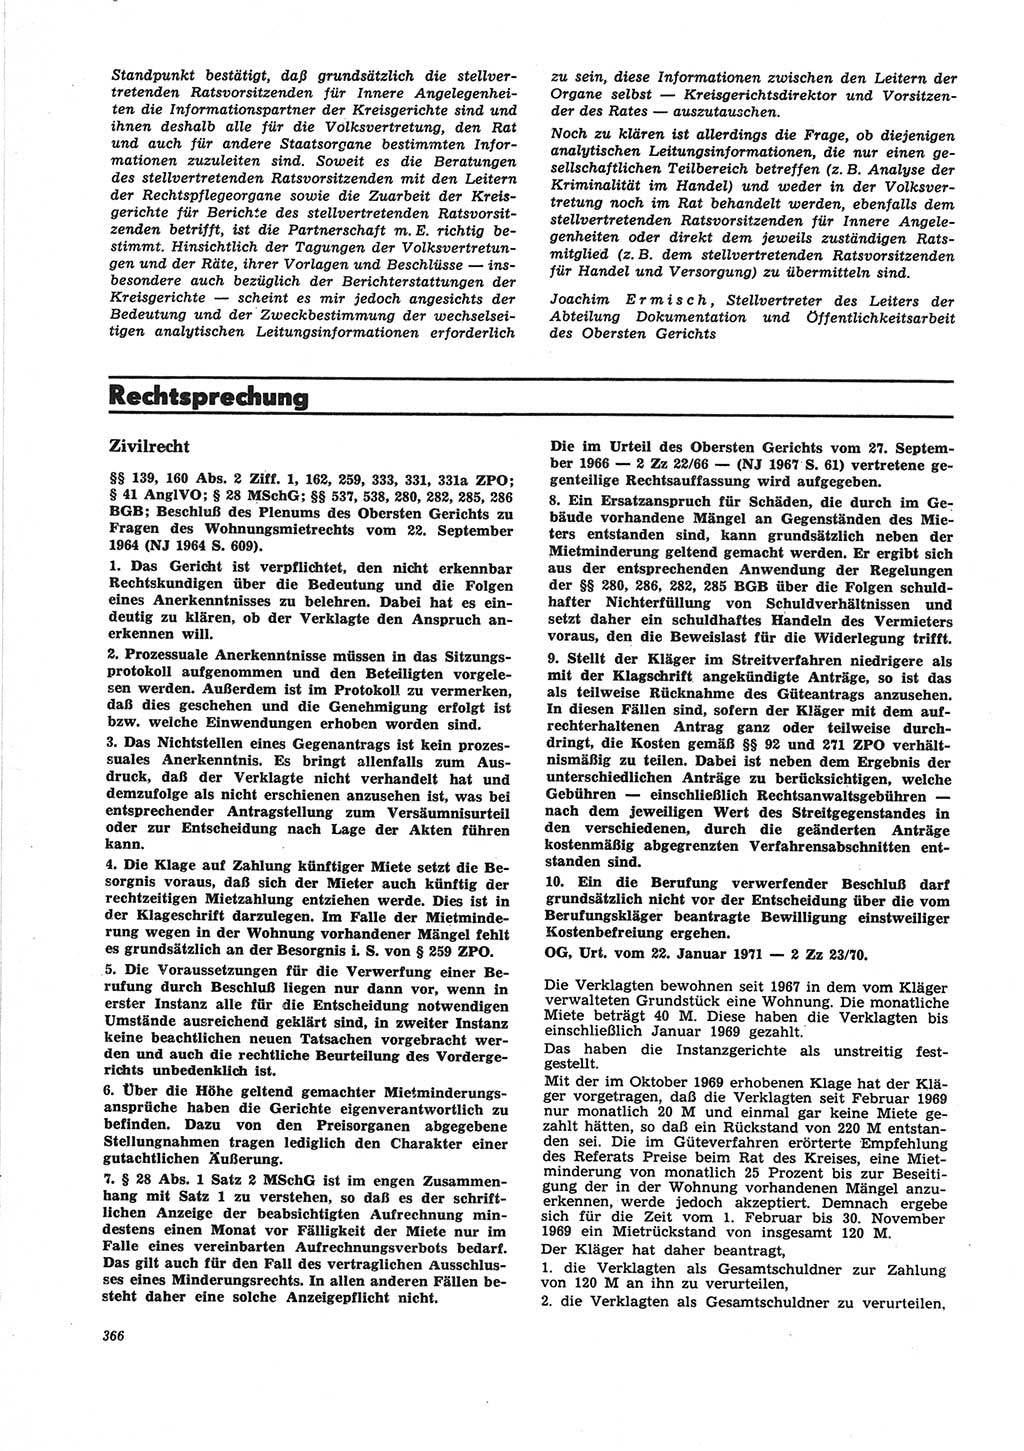 Neue Justiz (NJ), Zeitschrift für Recht und Rechtswissenschaft [Deutsche Demokratische Republik (DDR)], 25. Jahrgang 1971, Seite 366 (NJ DDR 1971, S. 366)